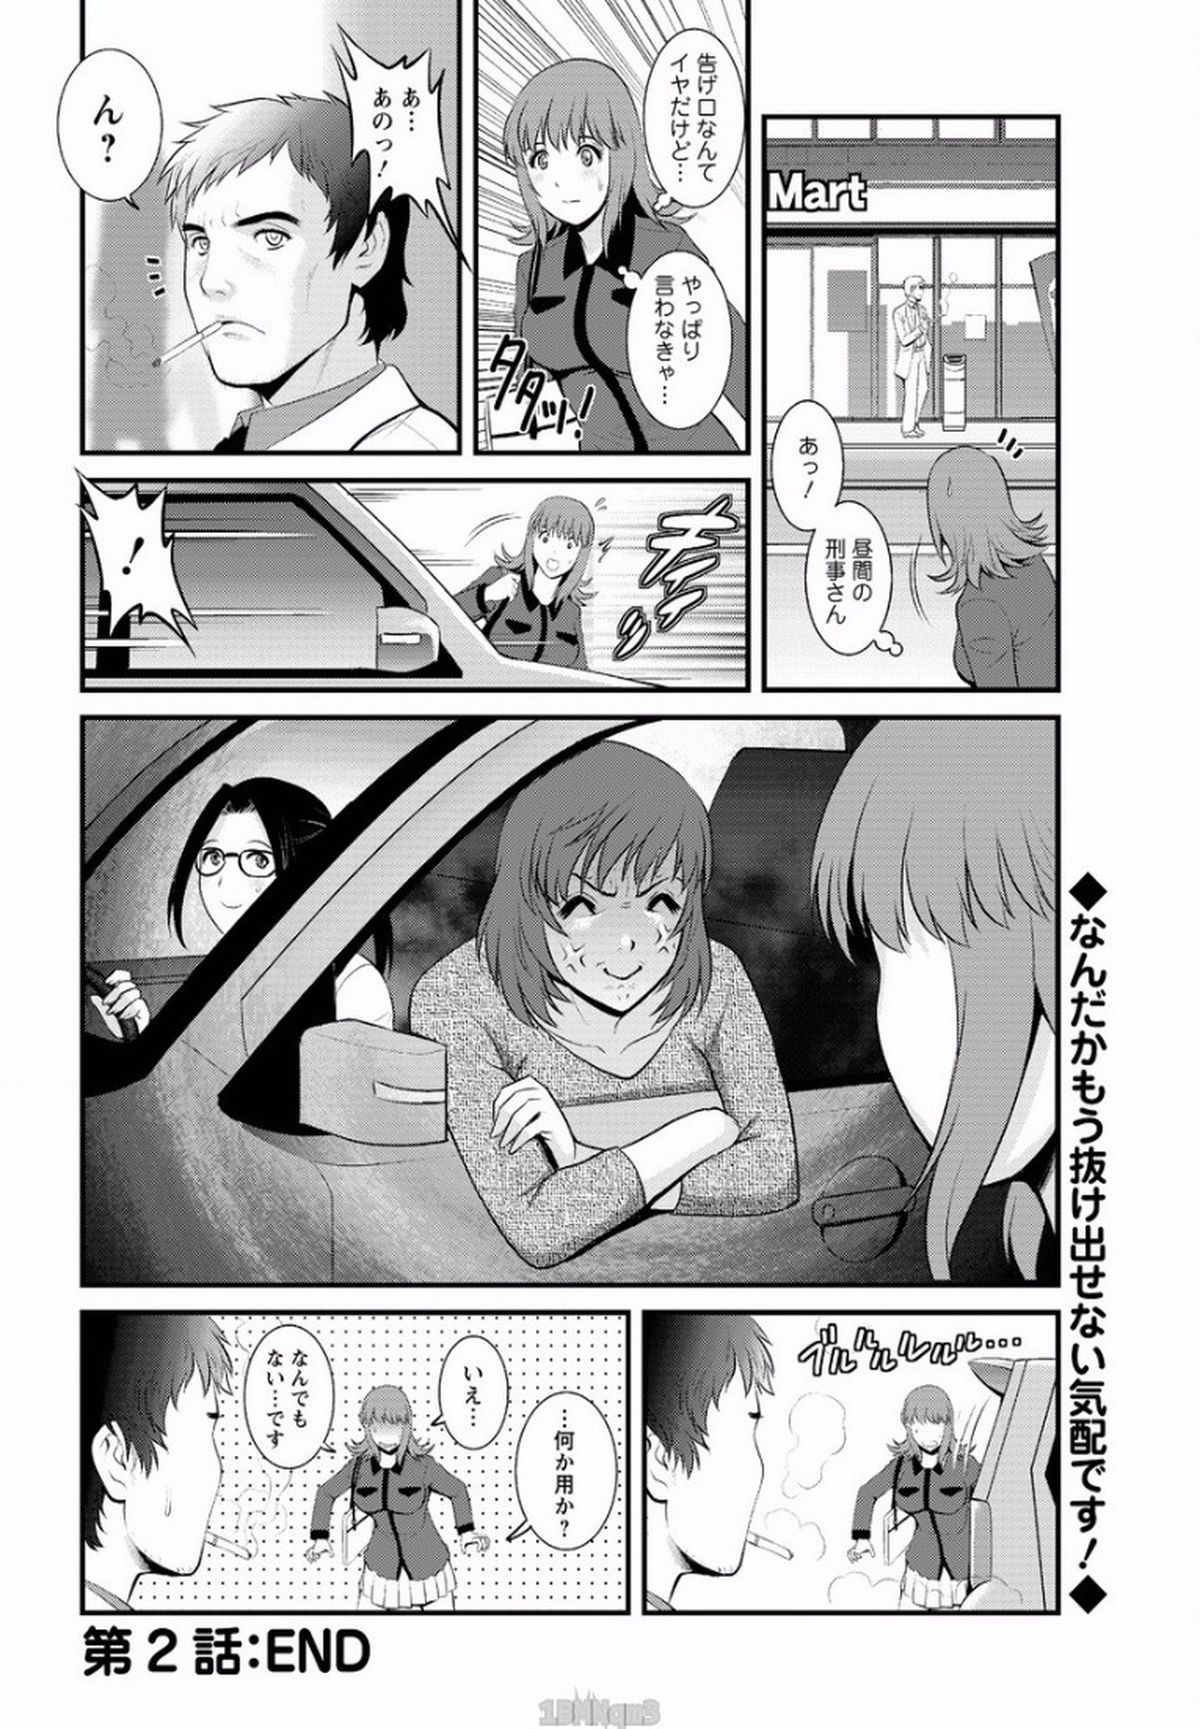 [Saigado] Part time Manaka-san Ch. 1-2 page 40 full